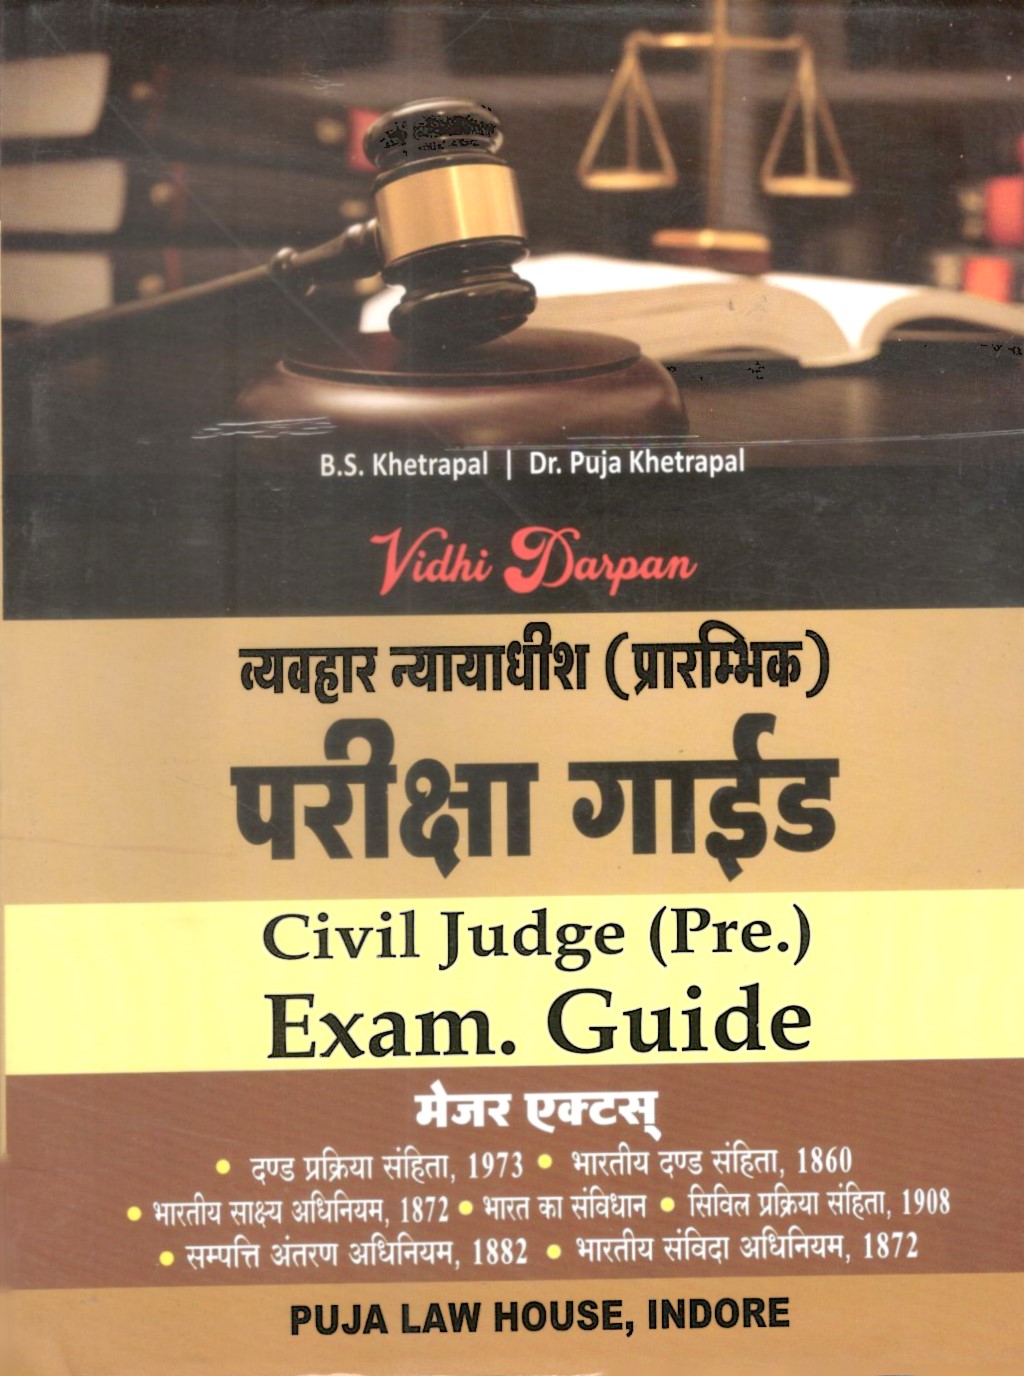  Buy Vidhi Darpan - Civil Judge (Pre.) Exams Guide (Major Acts) / व्यवहार न्यायाधीश (प्रारंभिक) परीक्षा गाइड (मेजर एक्ट्स)  Hindi Edition